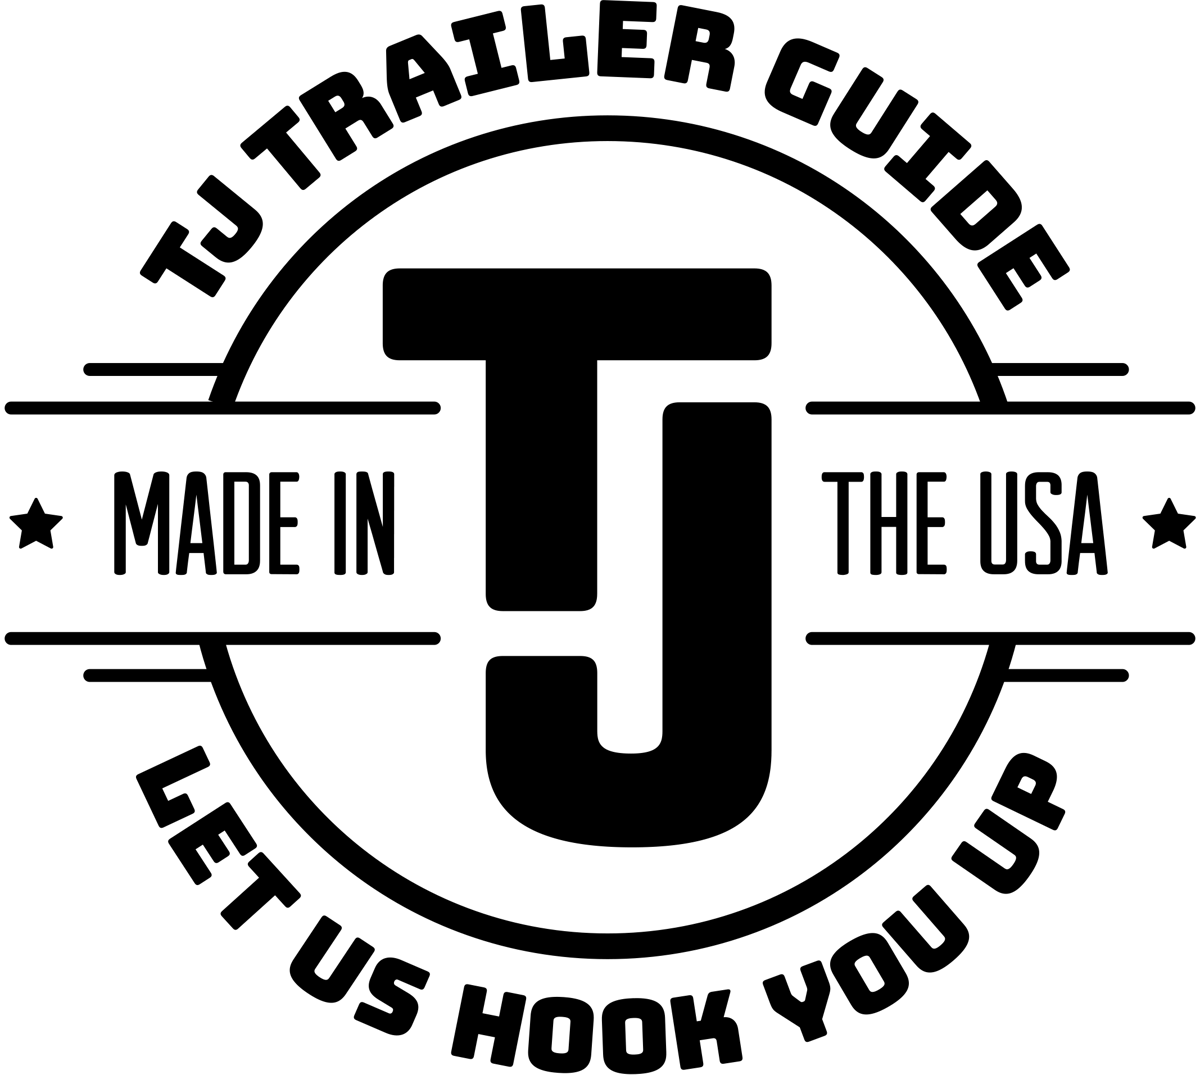 TJ Trailer Guide